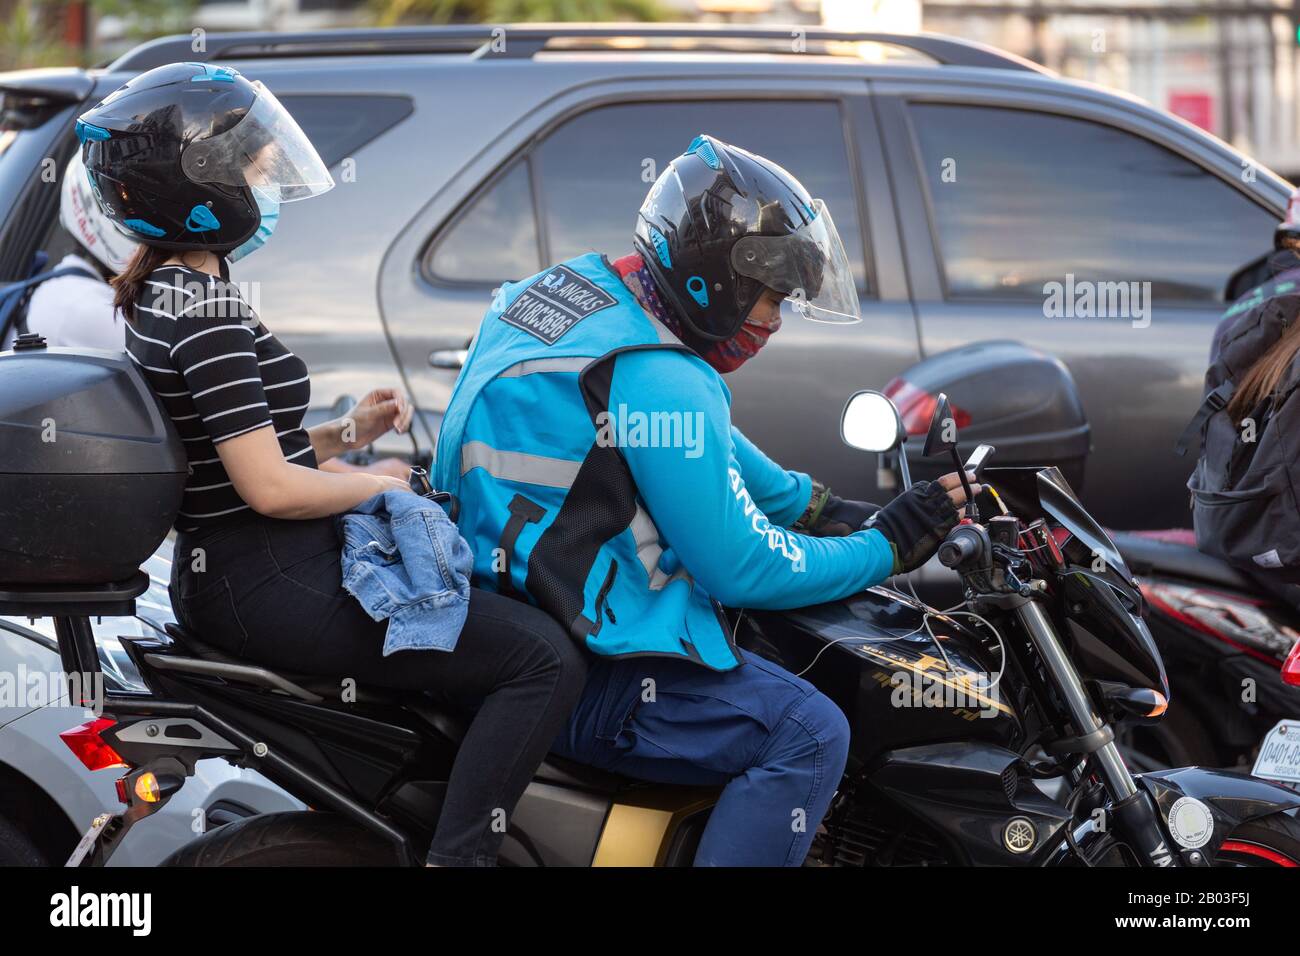 Manila, Philippinen - Februar 3, 2020: Motorradfahrer pendeln im Verkehr auf den Straßen von Makati Stockfoto